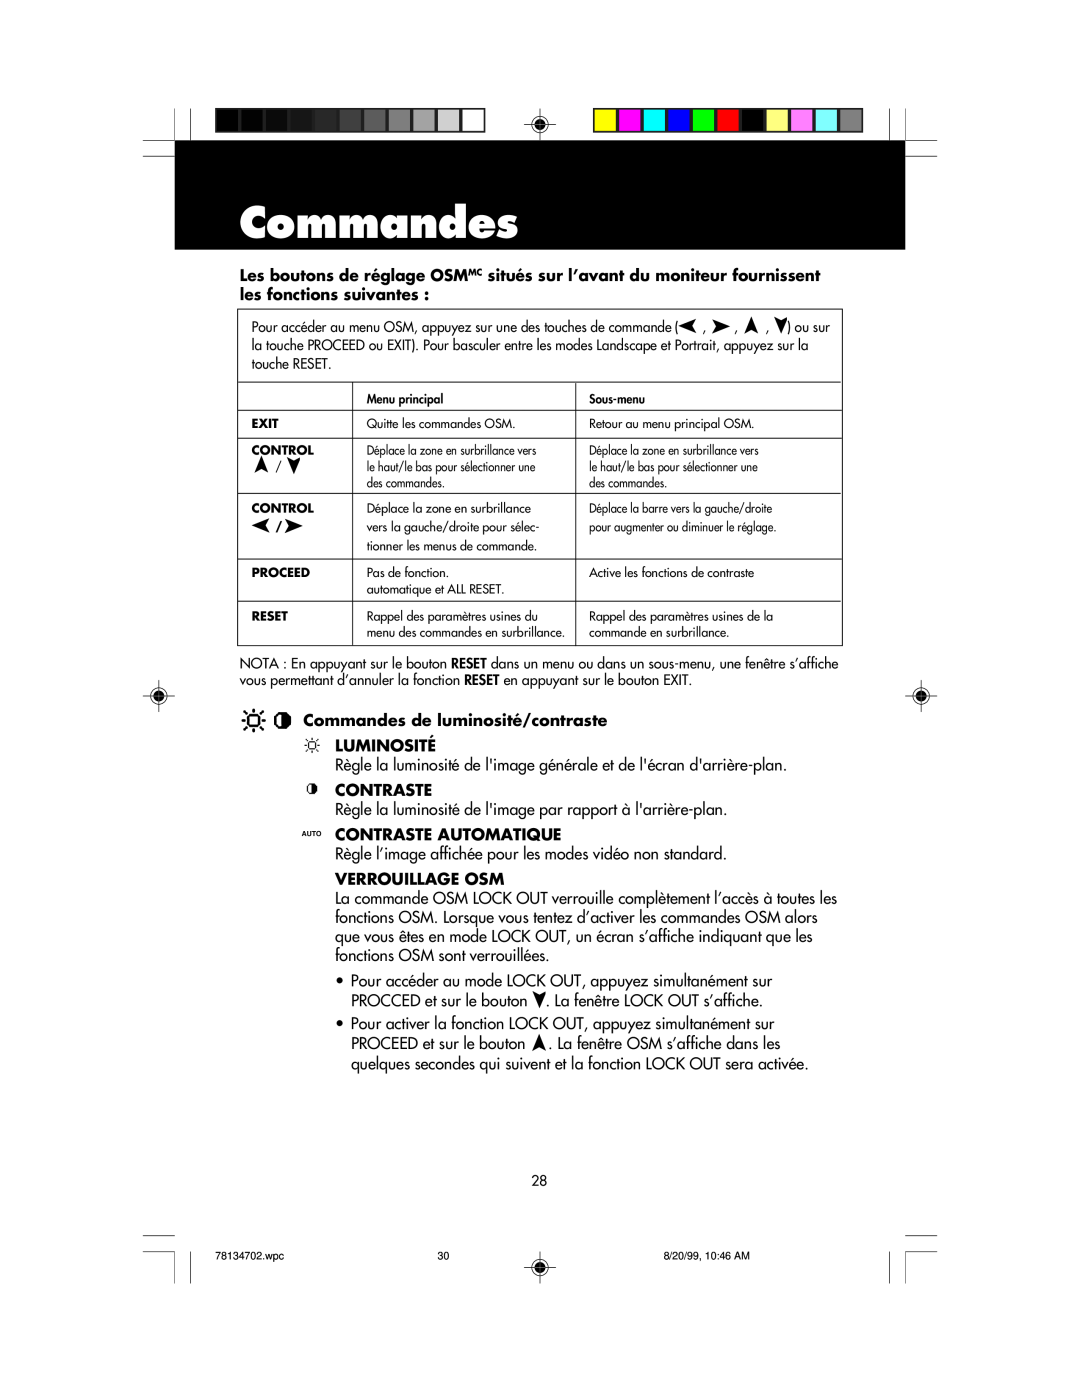 NEC LCD1510+ user manual Commandes de luminosité/contraste LUMINOSITÉ, Auto Contraste Automatique, Verrouillage Osm 